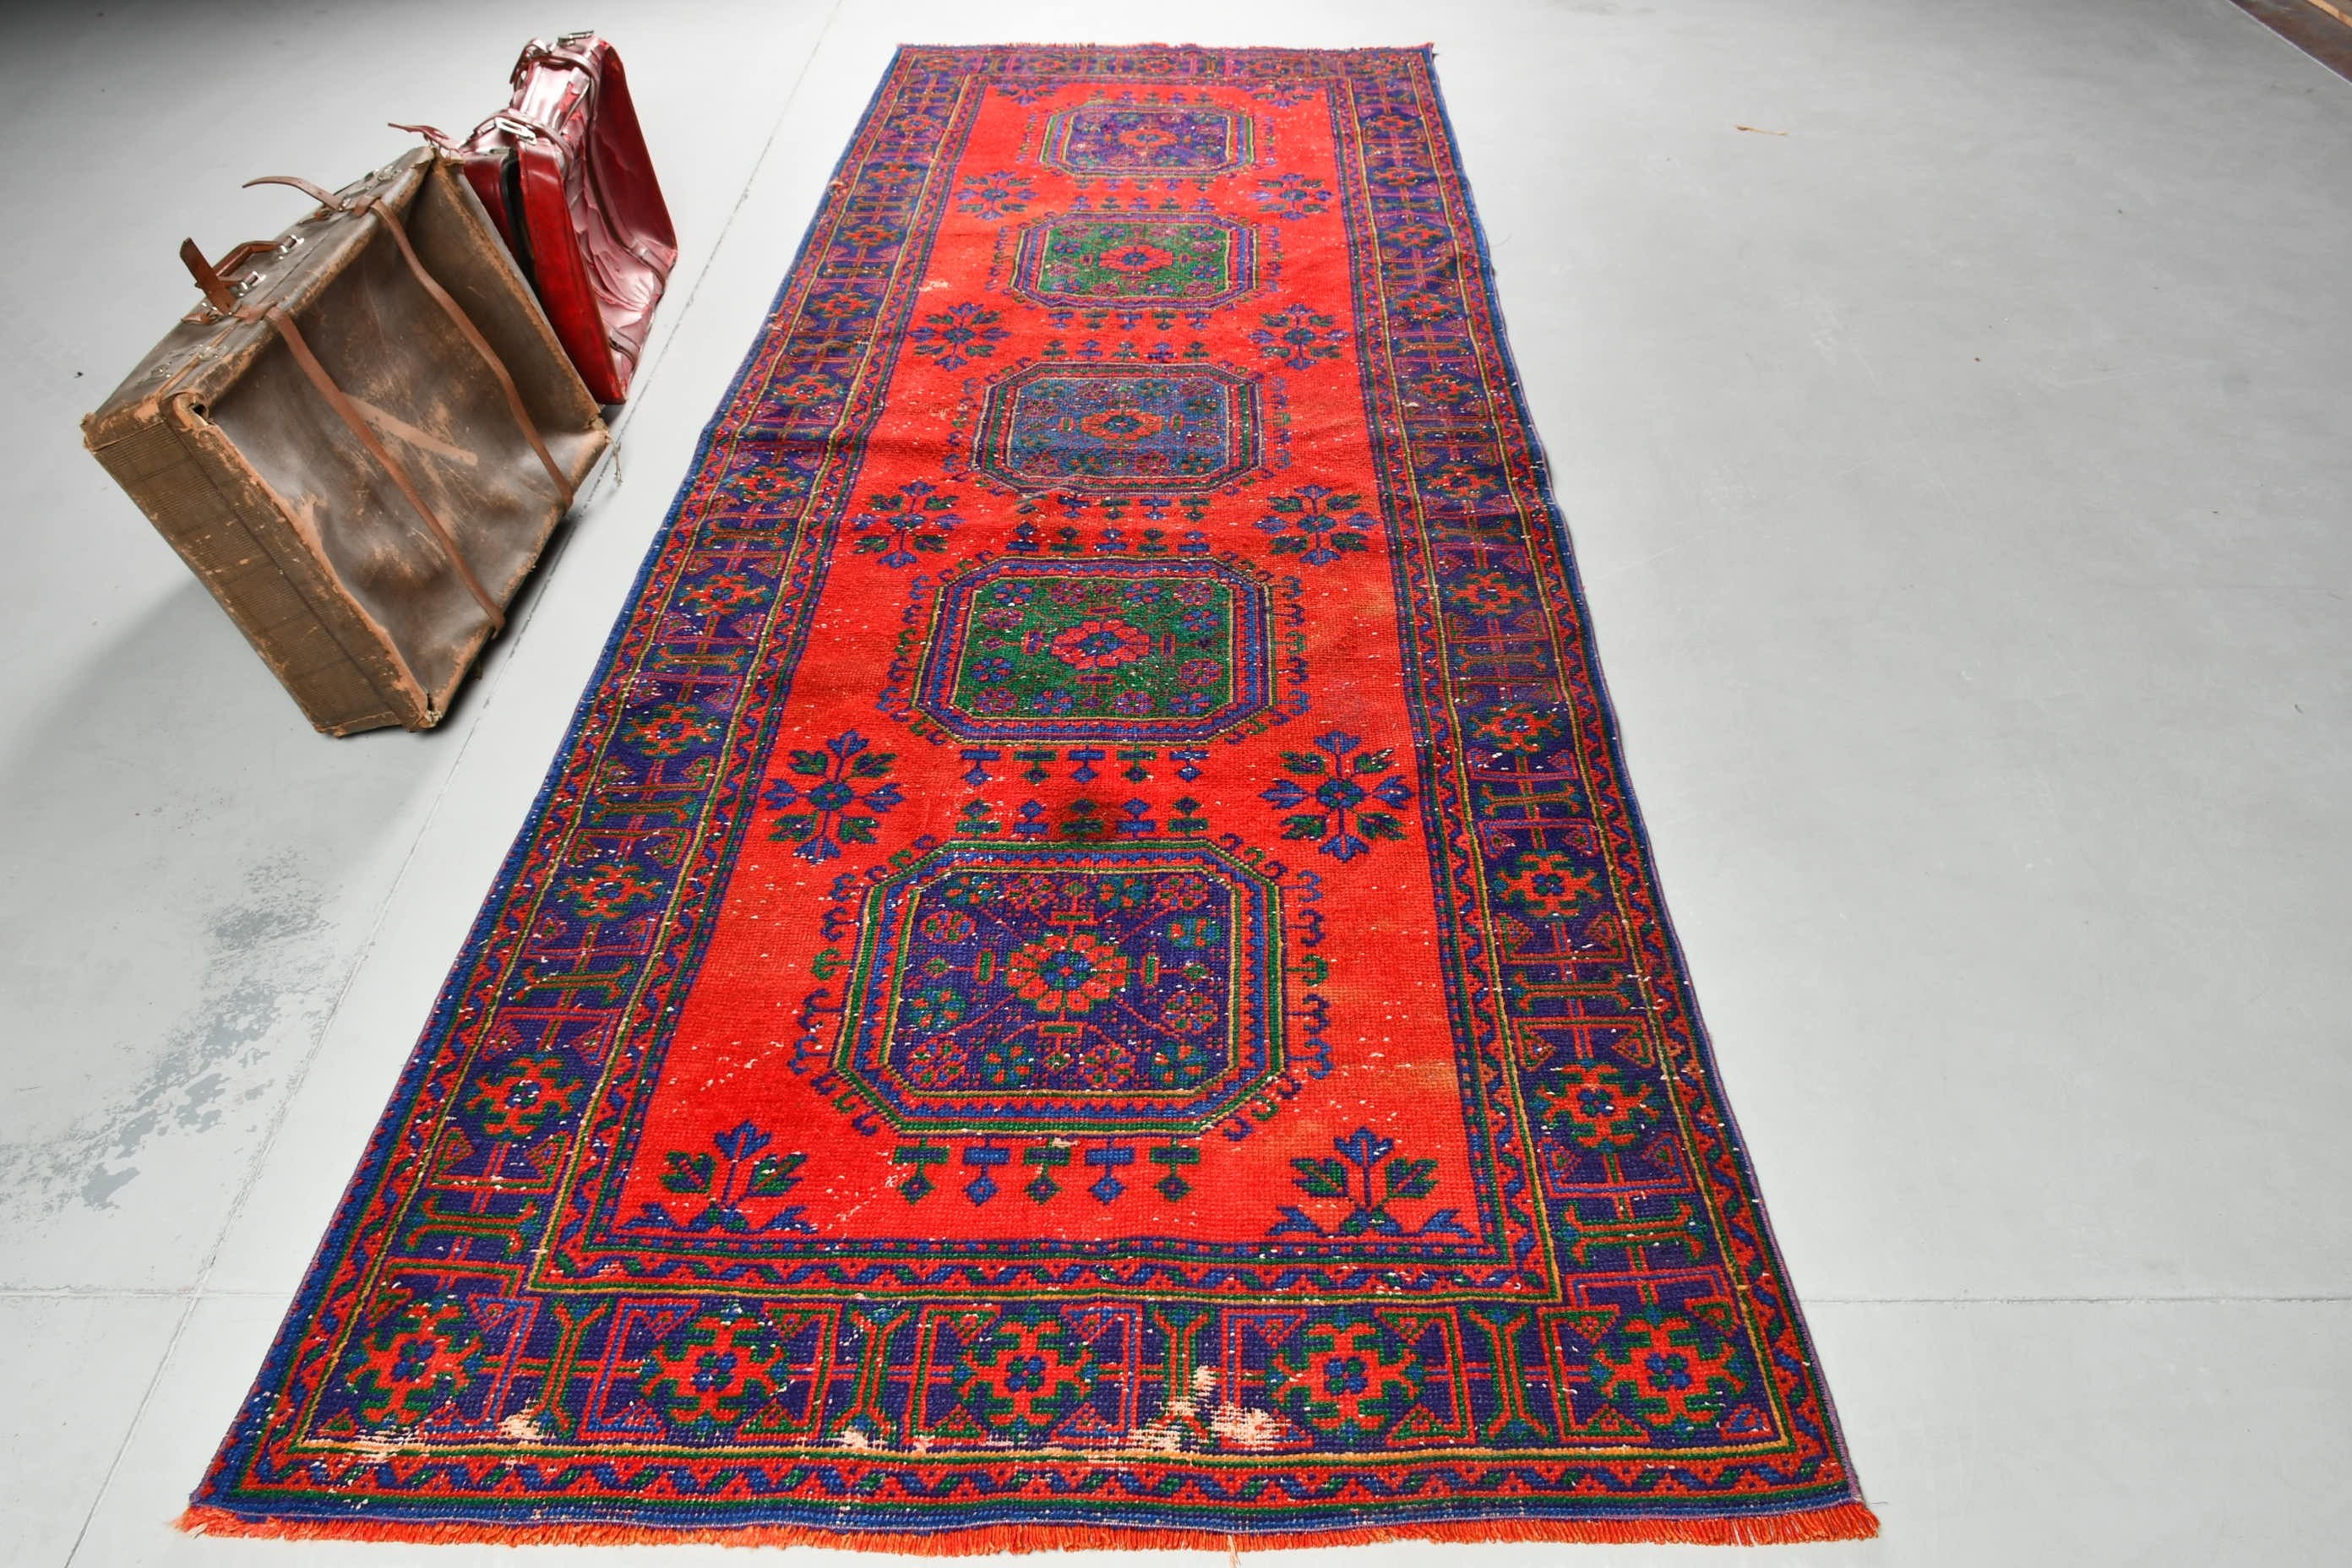 Corridor Rugs, Oushak Rugs, Vintage Rugs, 4.2x12.1 ft Runner Rug, Turkish Rugs, Aesthetic Rug, Red Oriental Rug, Hallway Rug